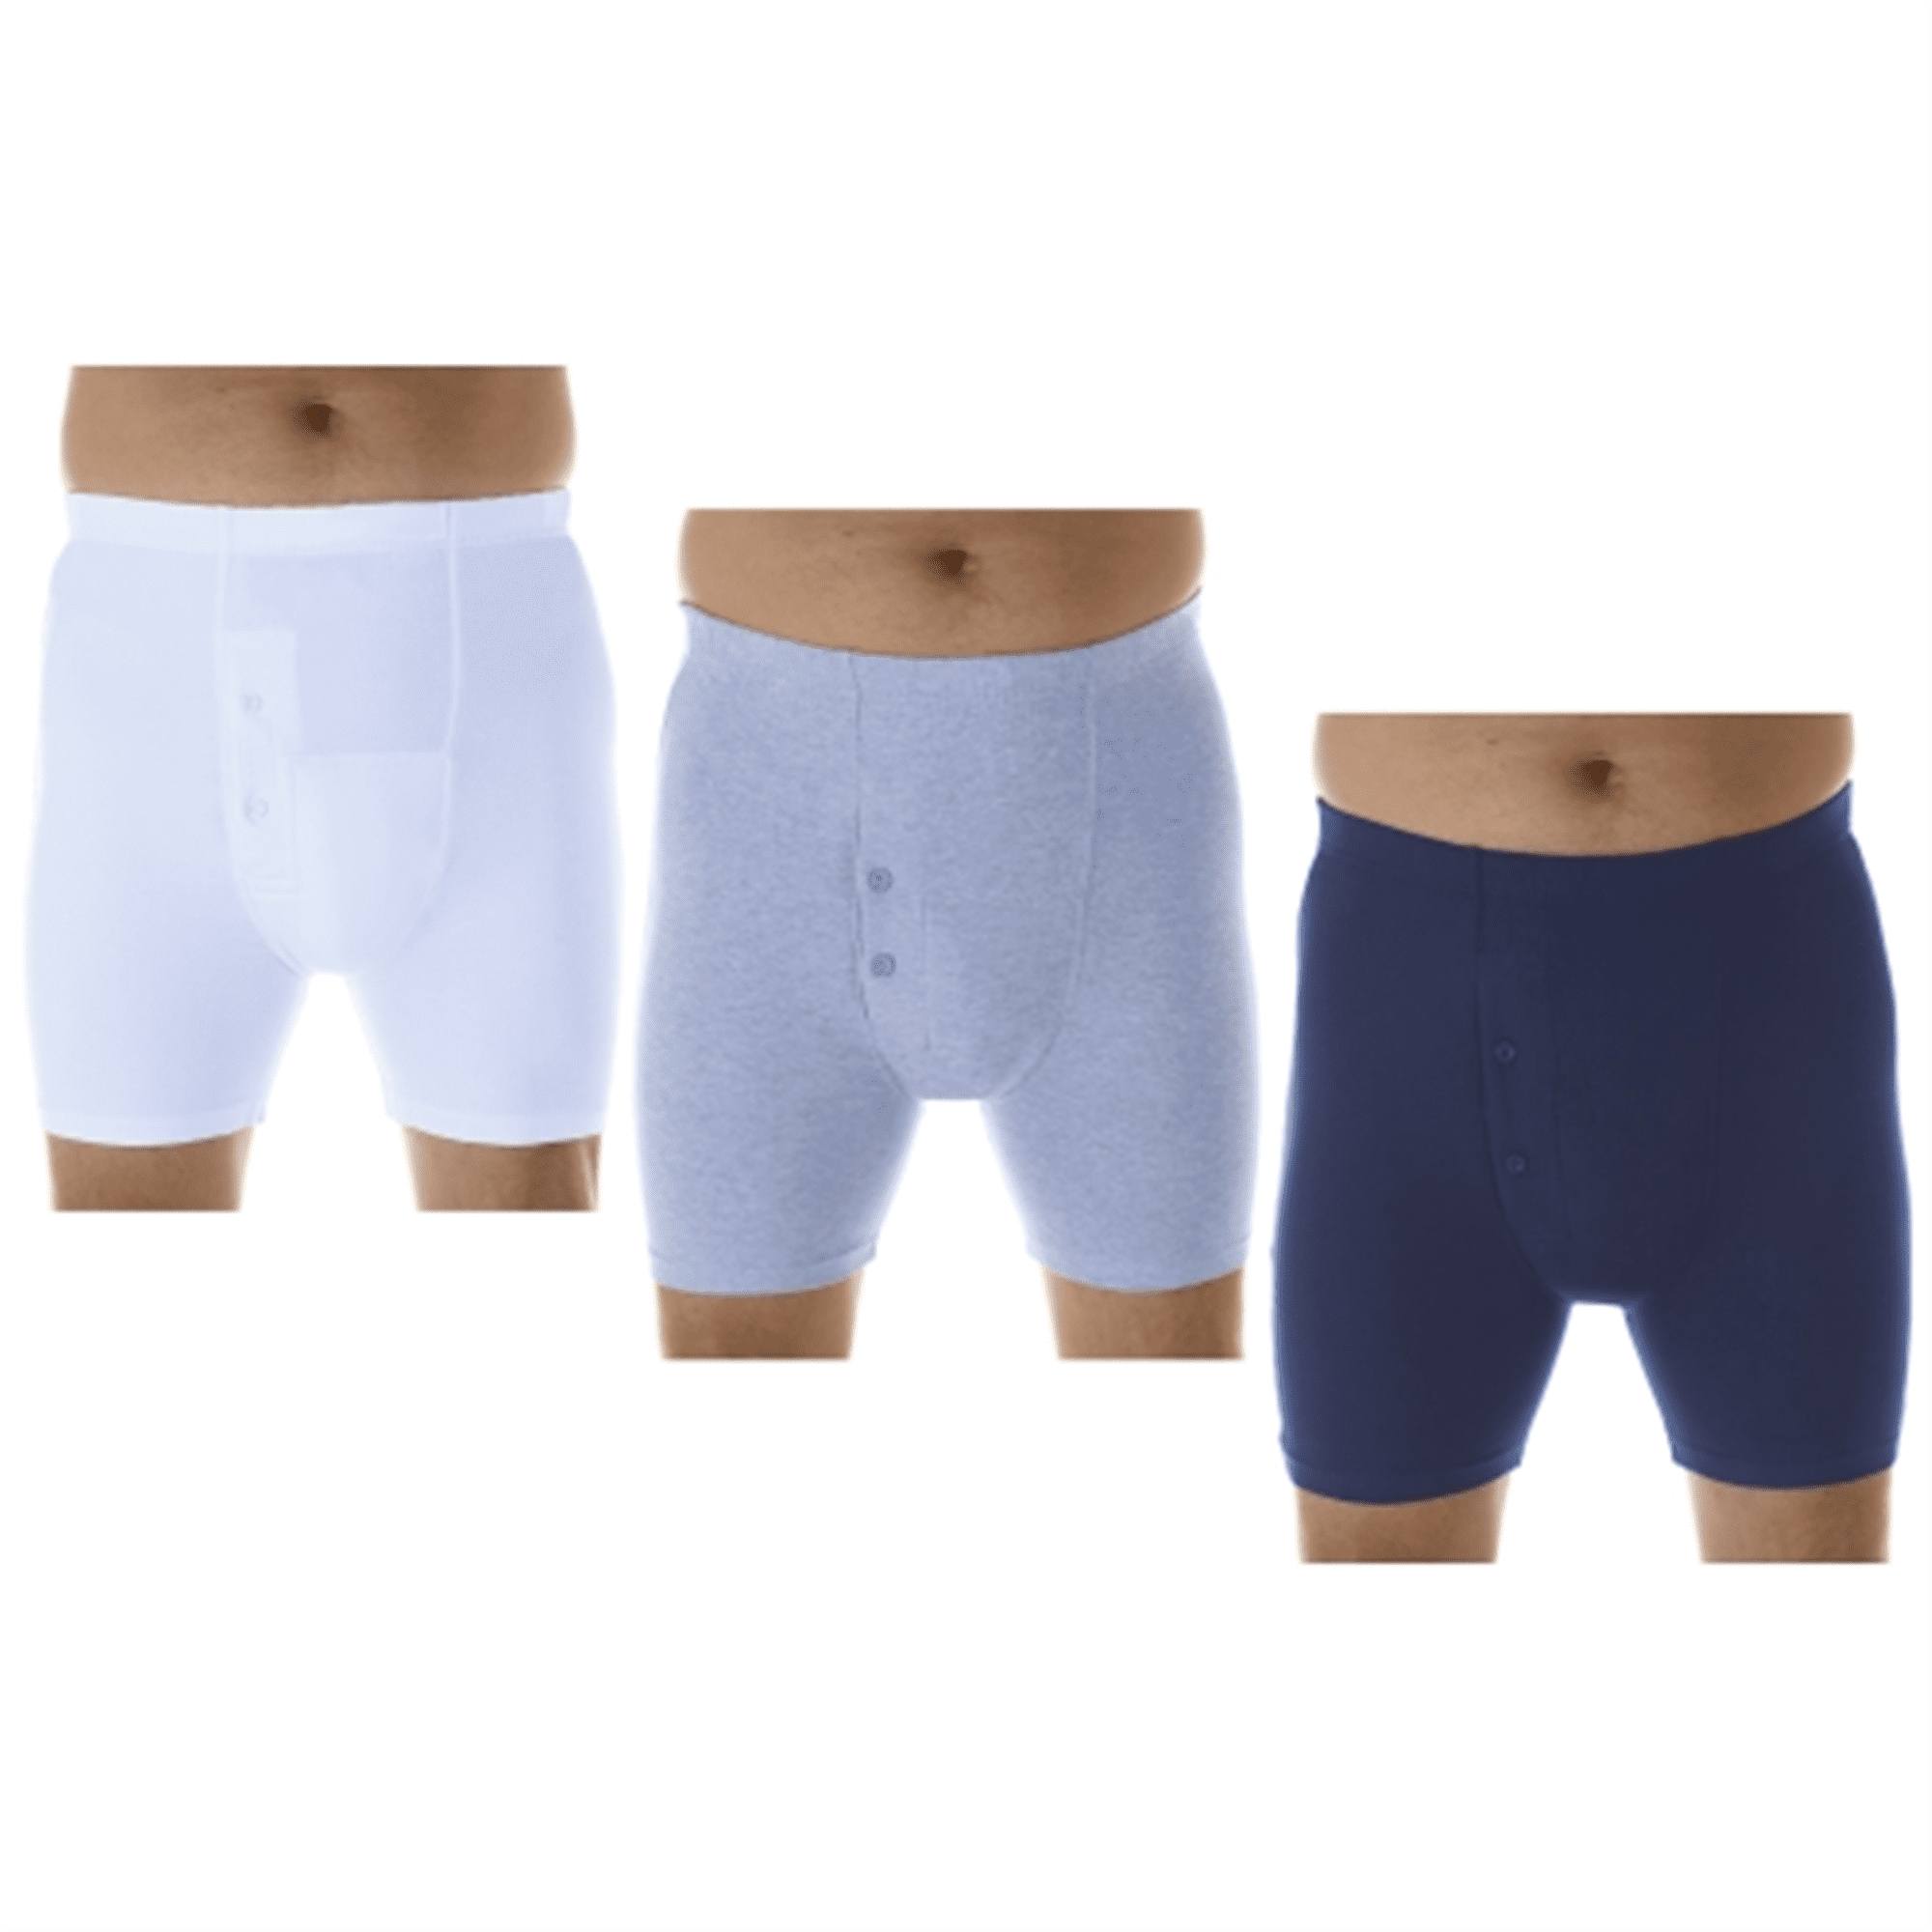 Men's Incontinence Underwear 3-Packs Bladder Control Nepal